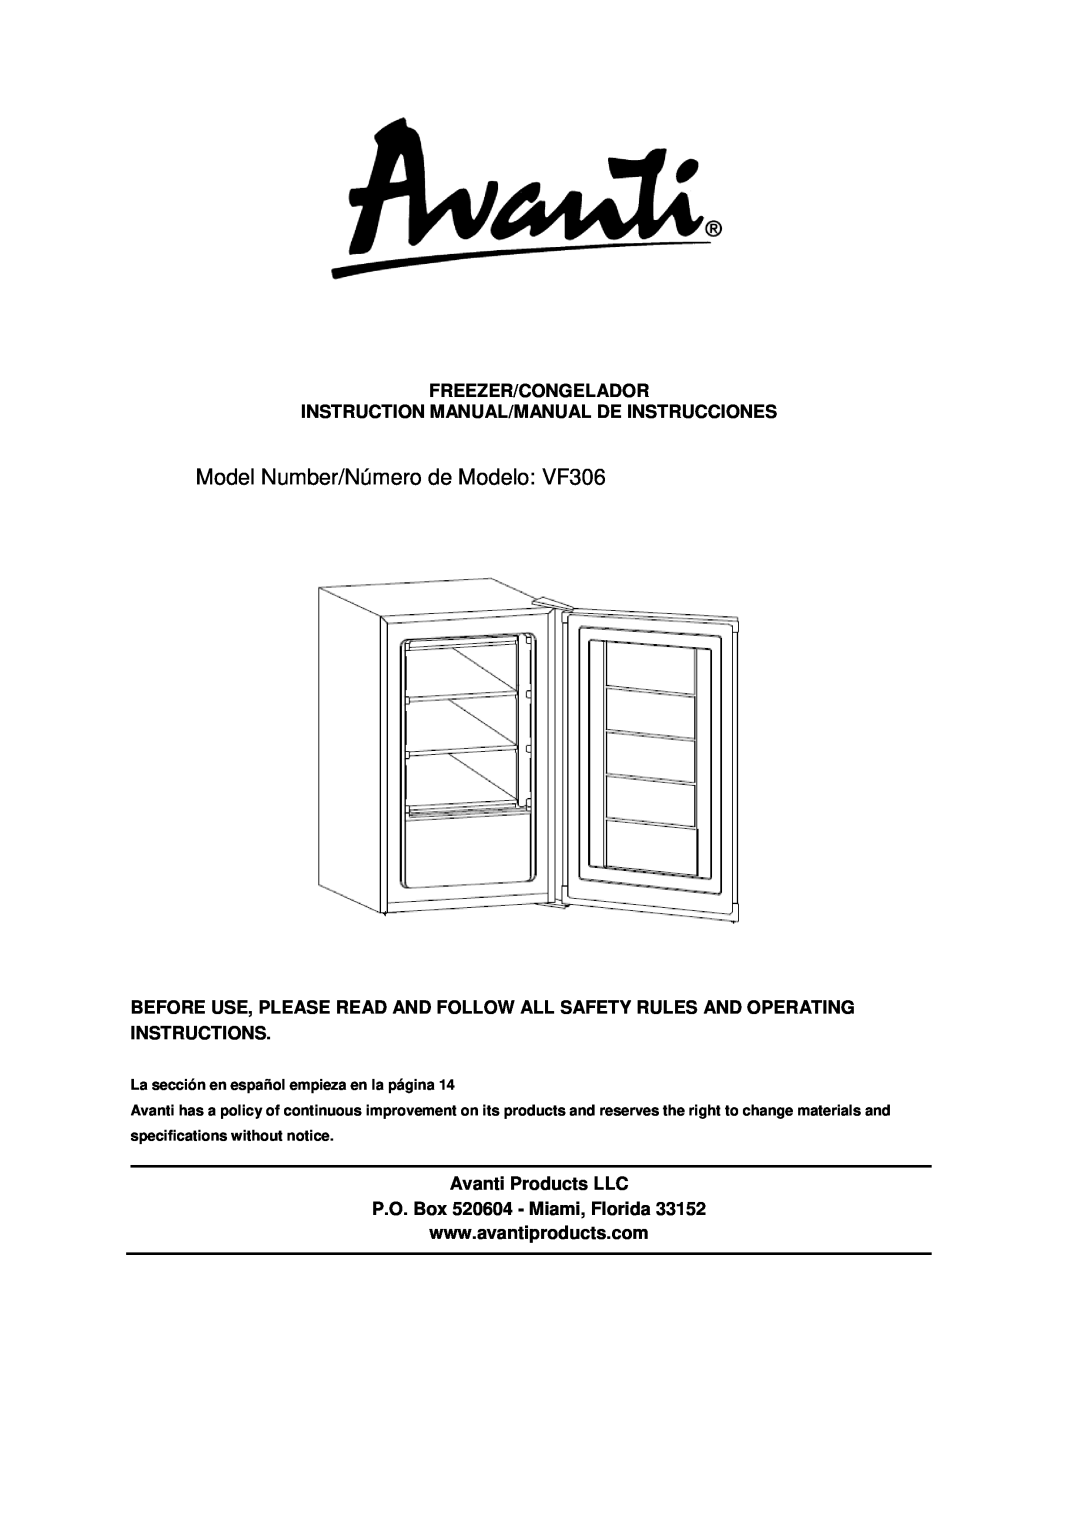 Avanti instruction manual Model Number/Número de Modelo VF306, Freezer/Congelador, Avanti Products LLC 